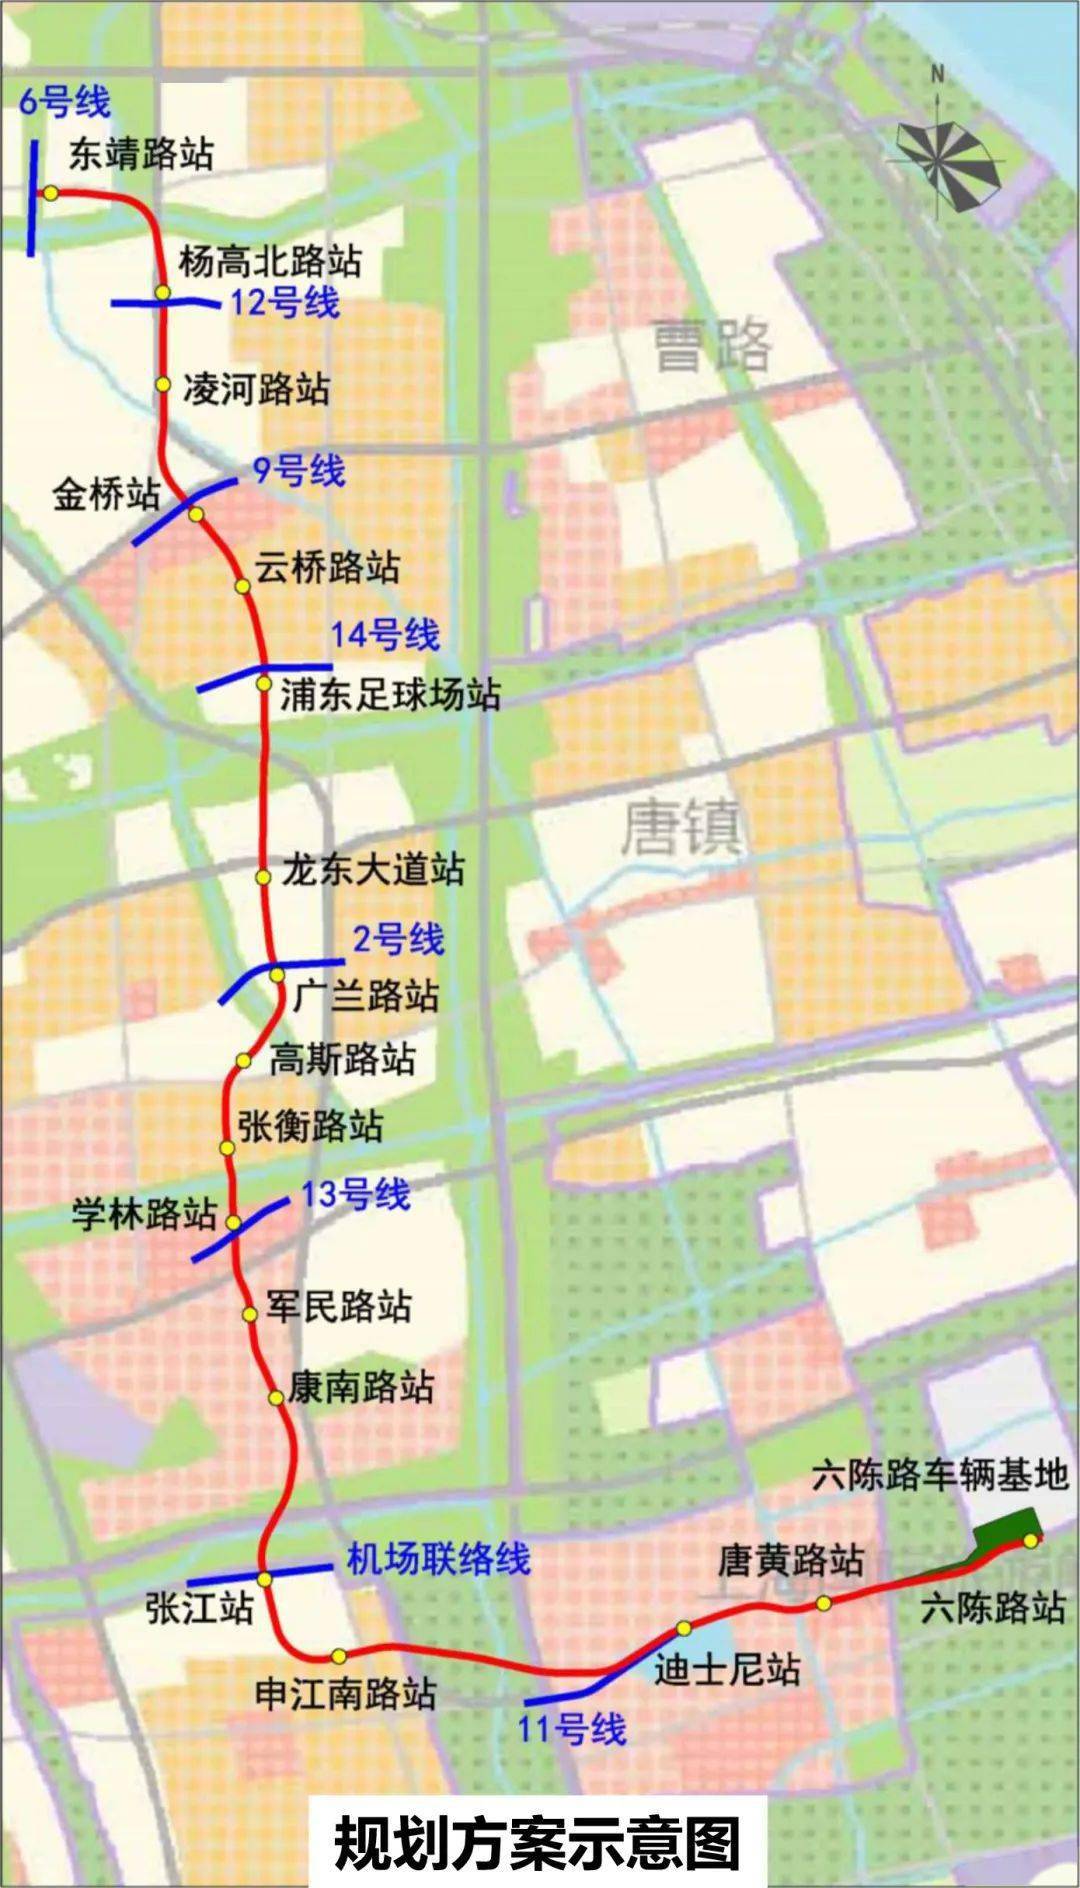 上海轨交21号线一期工程选线专项规划草案公示,共设18